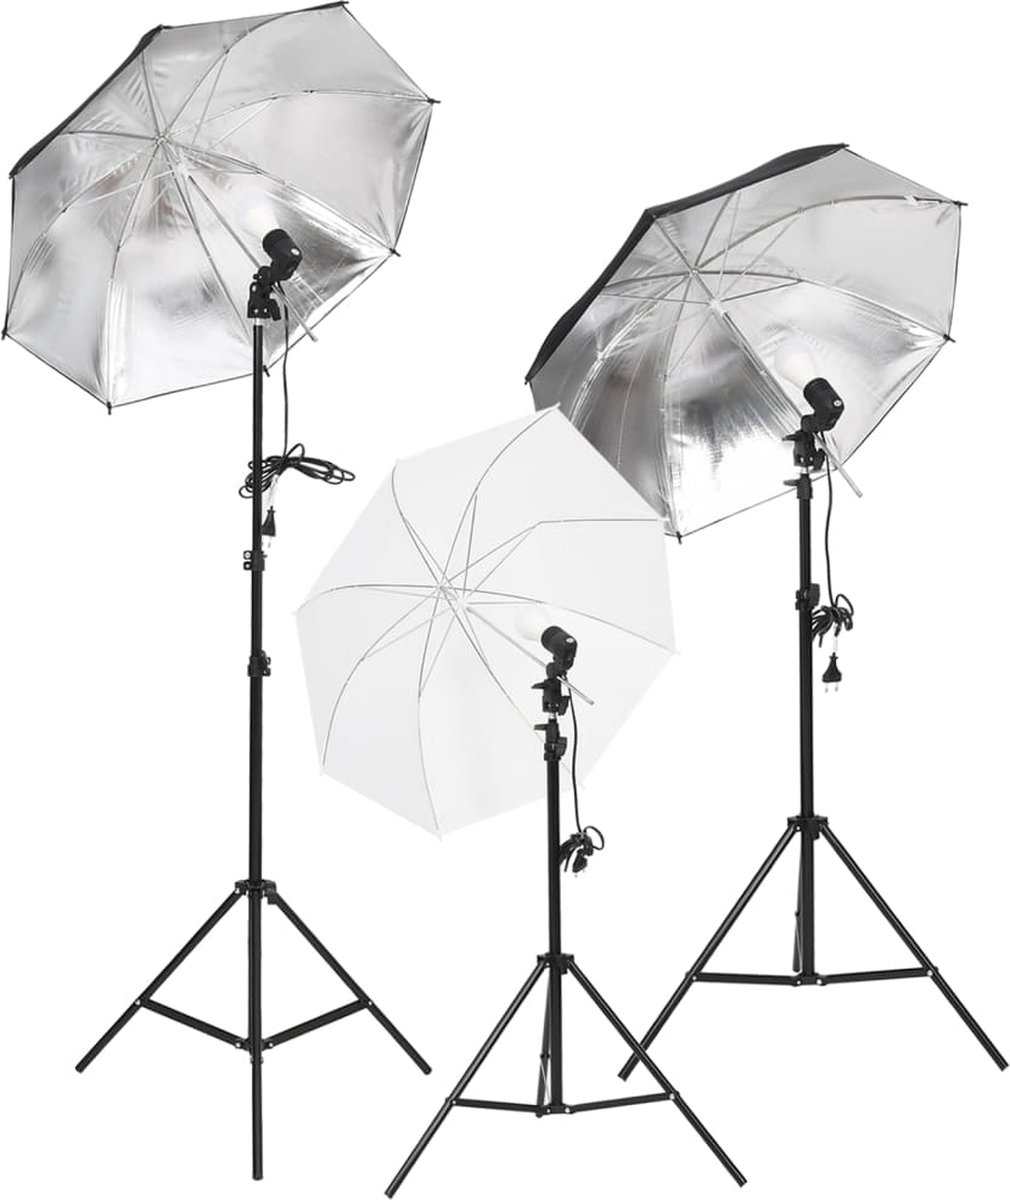 VidaLife Studioverlichtingsset met statieven en paraplu's